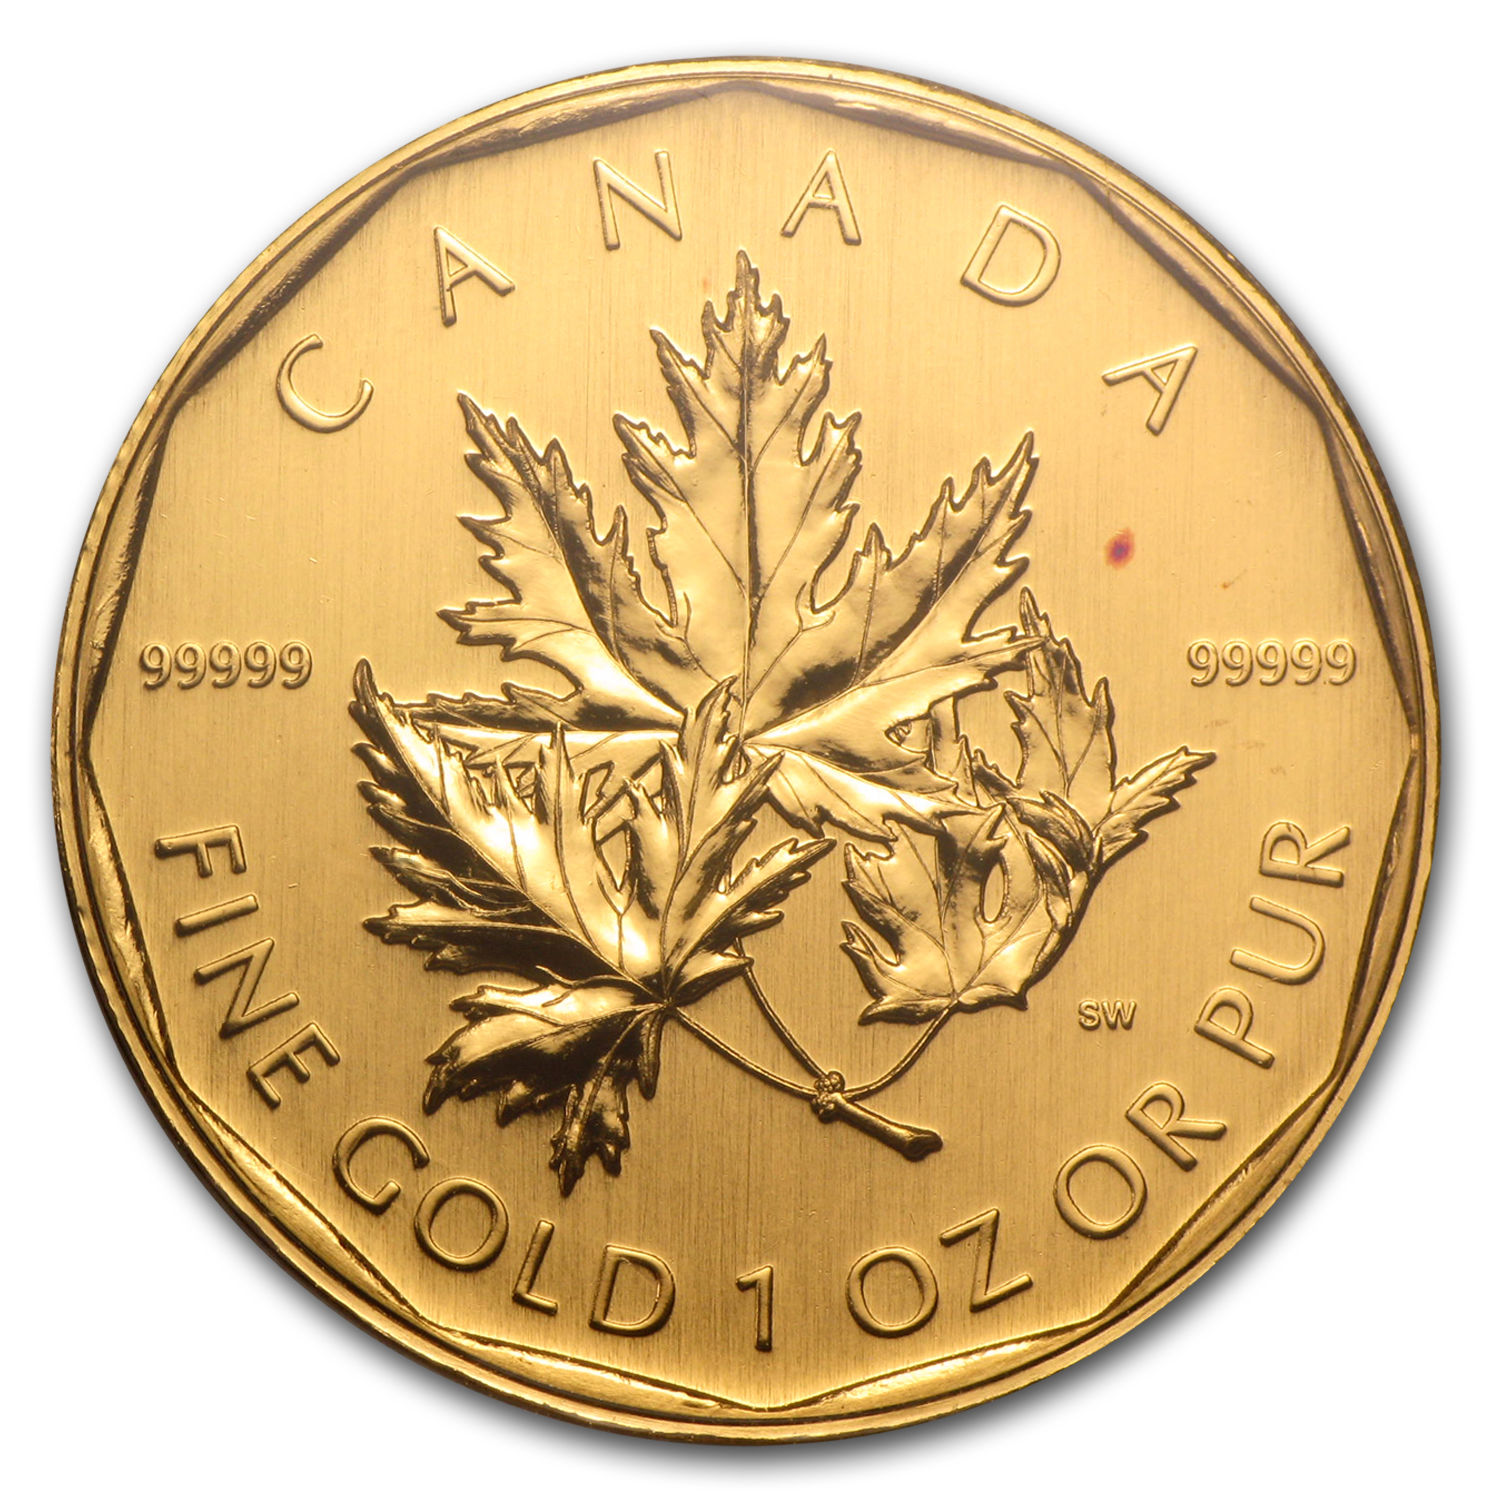 2007 Canada 1 oz Gold Maple Leaf .99999 BU (No Assay) - SKU #59993